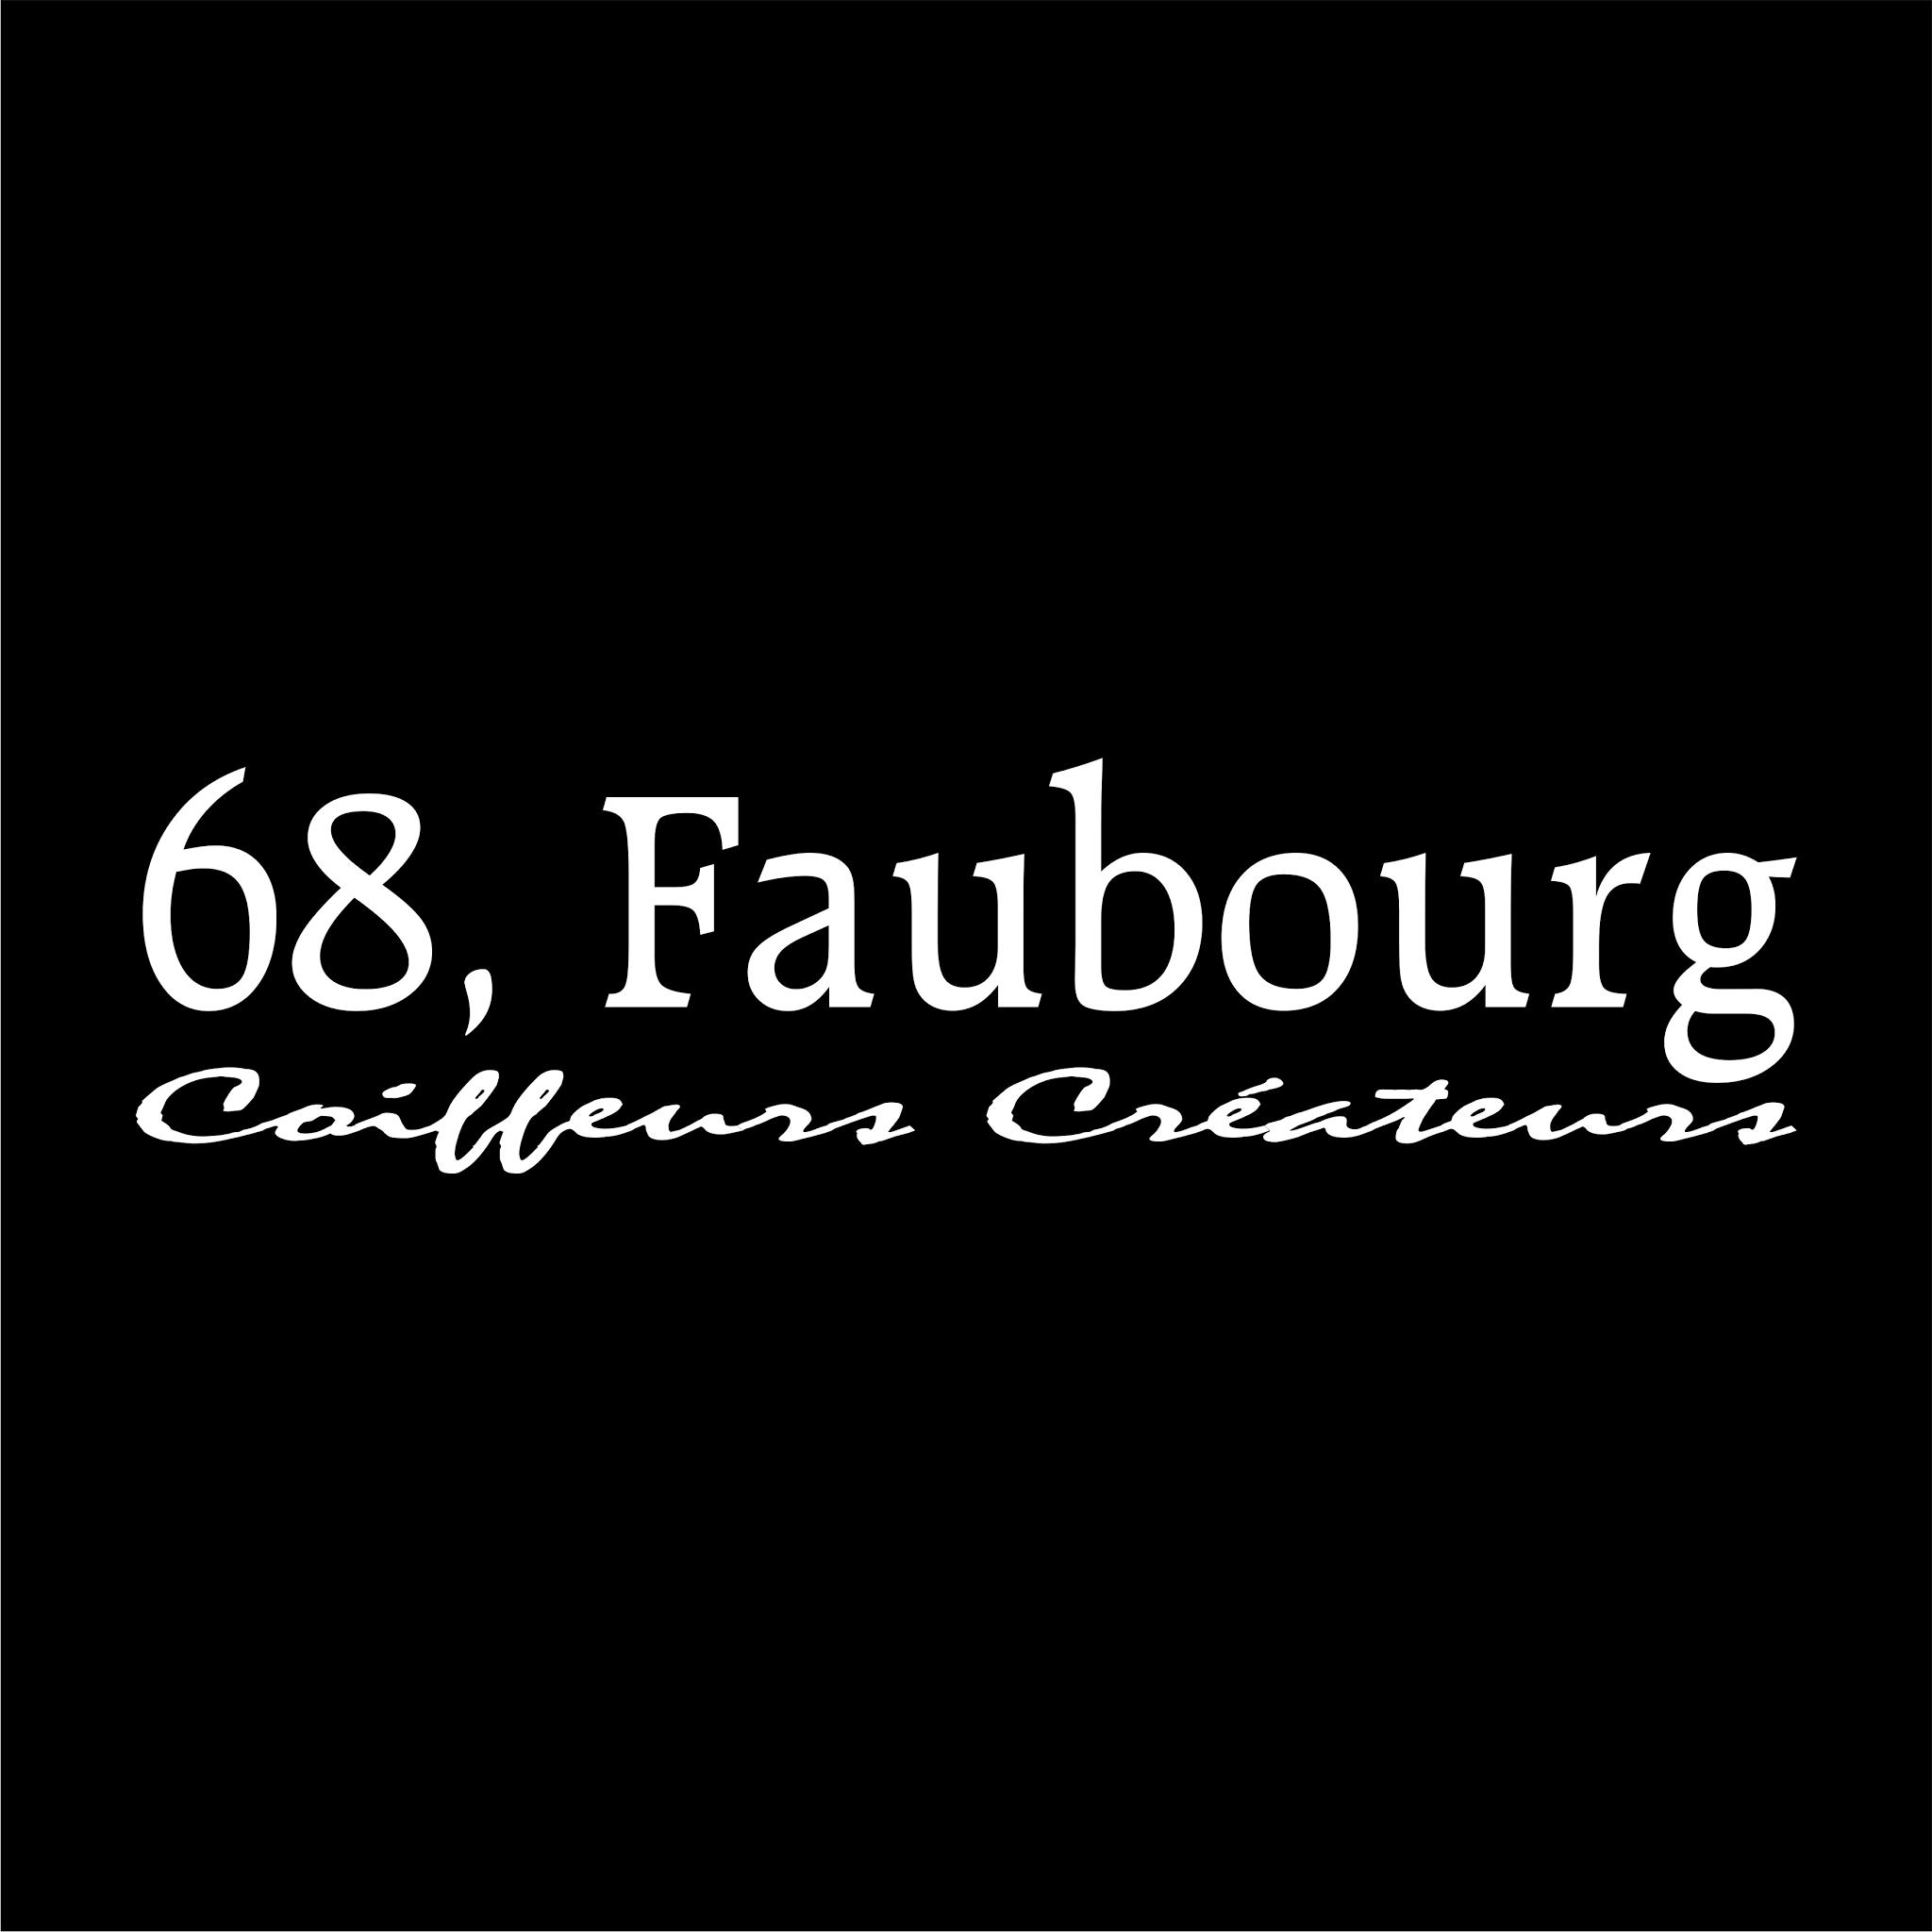 68,faubourg Belfort